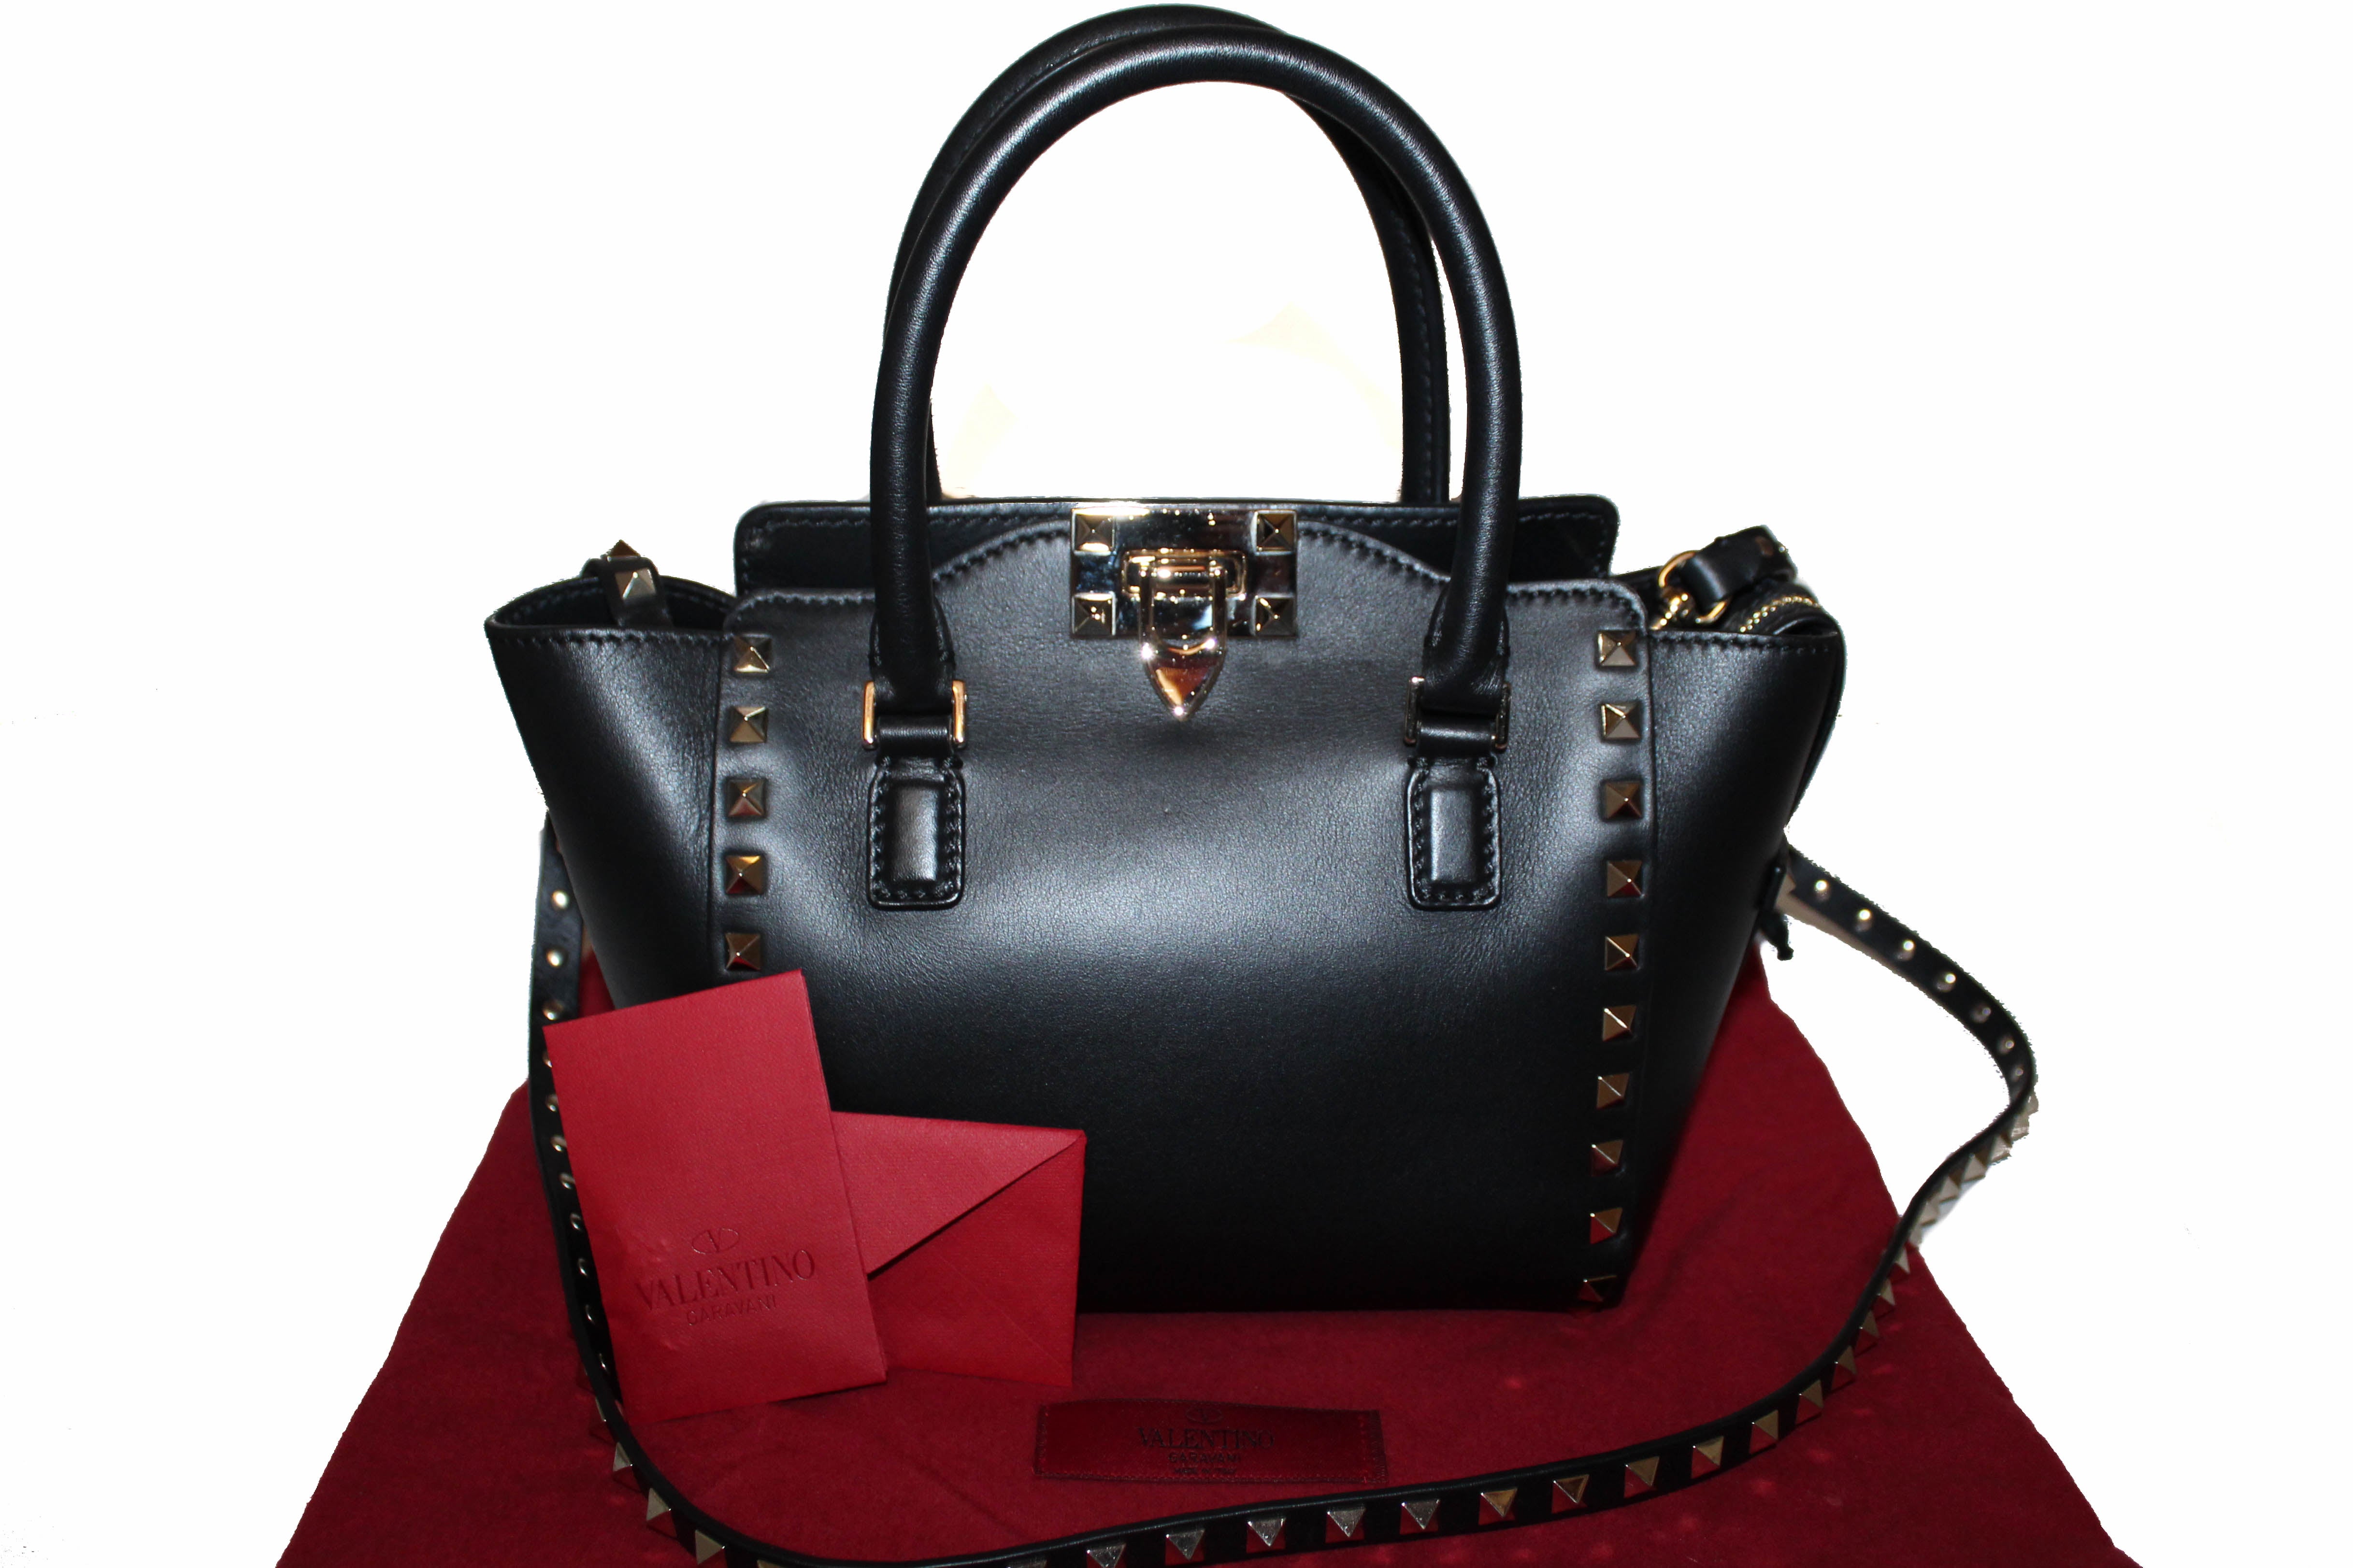 Authentic Valentino Black Leather Rockstud Micro Mini Tote Bag